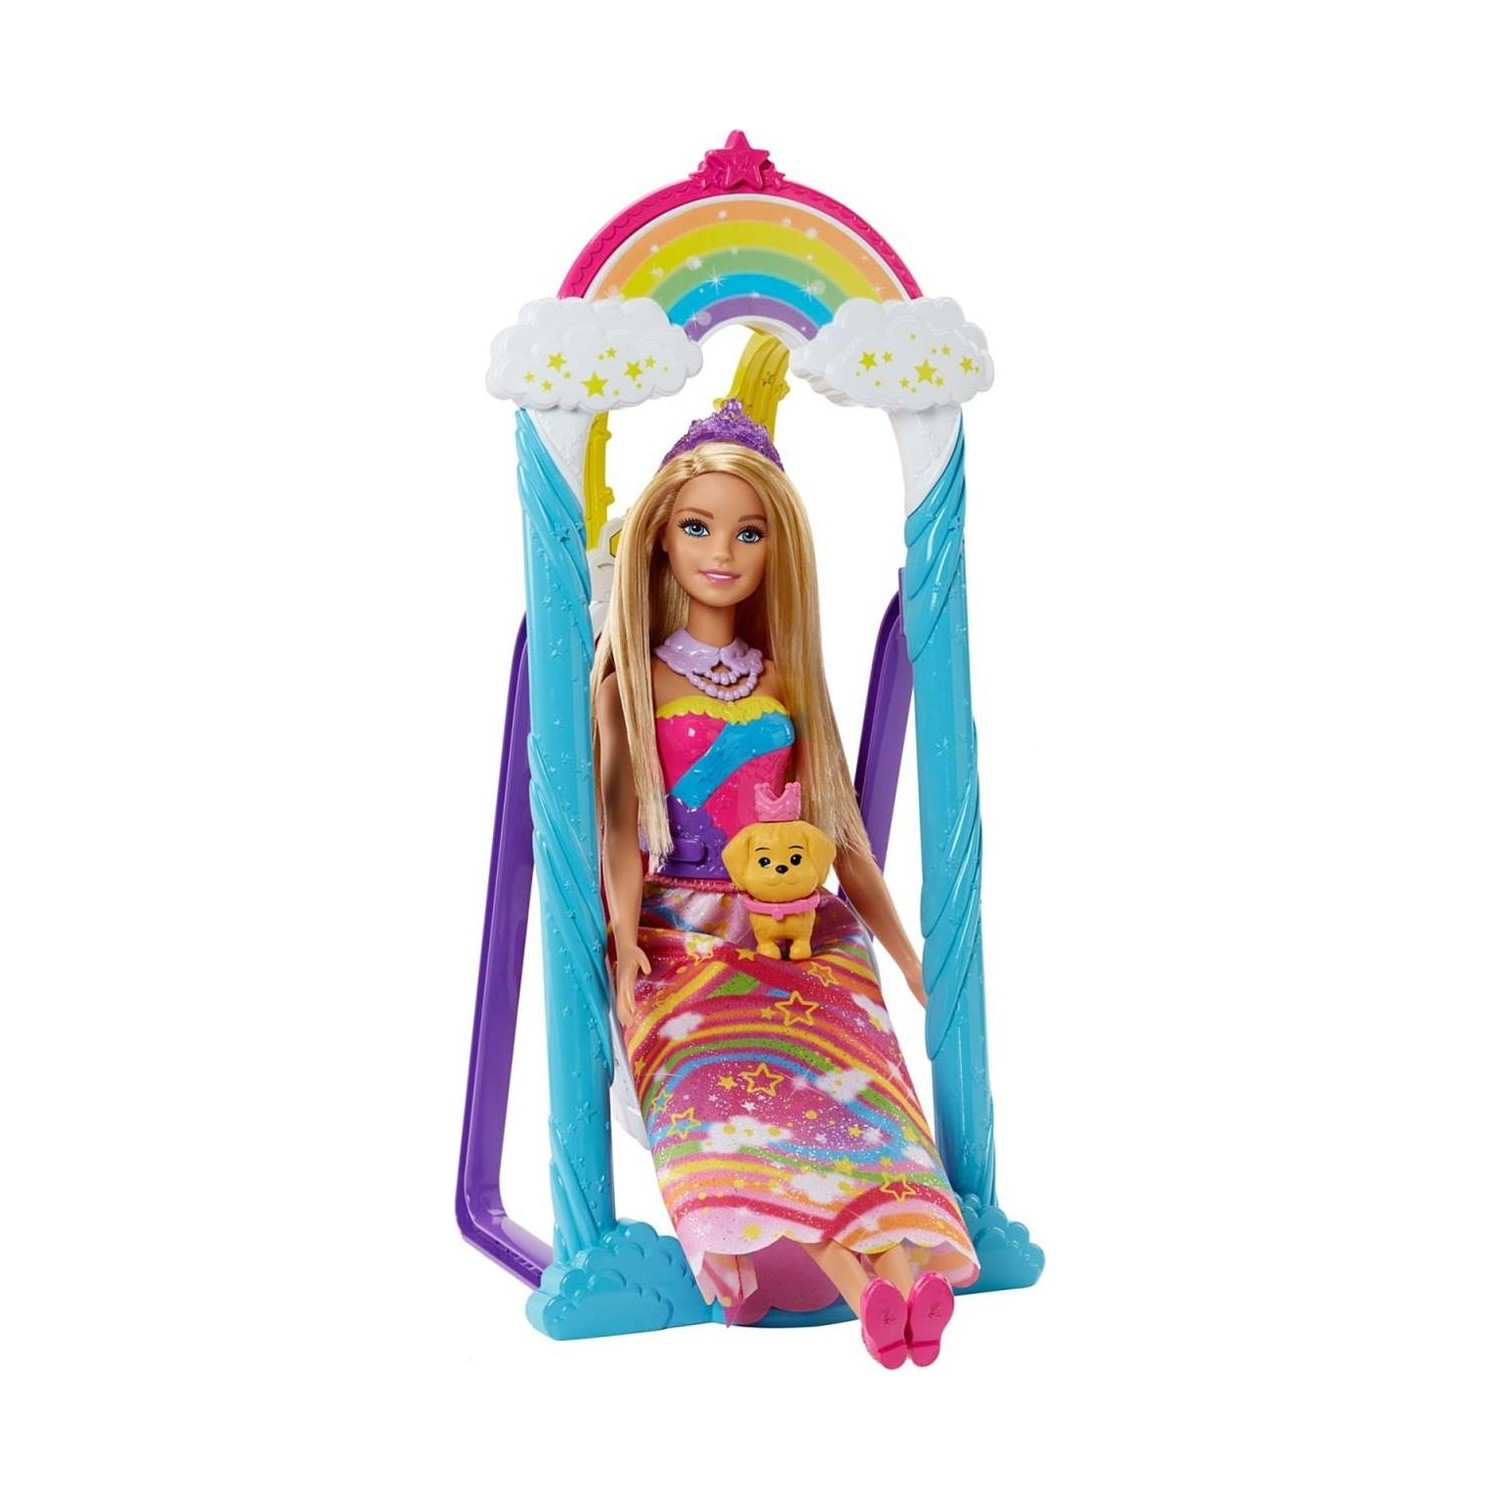 Кукла Barbie Dreamtopia радужная принцесса кукла barbie русалка dreamtopia ggc09